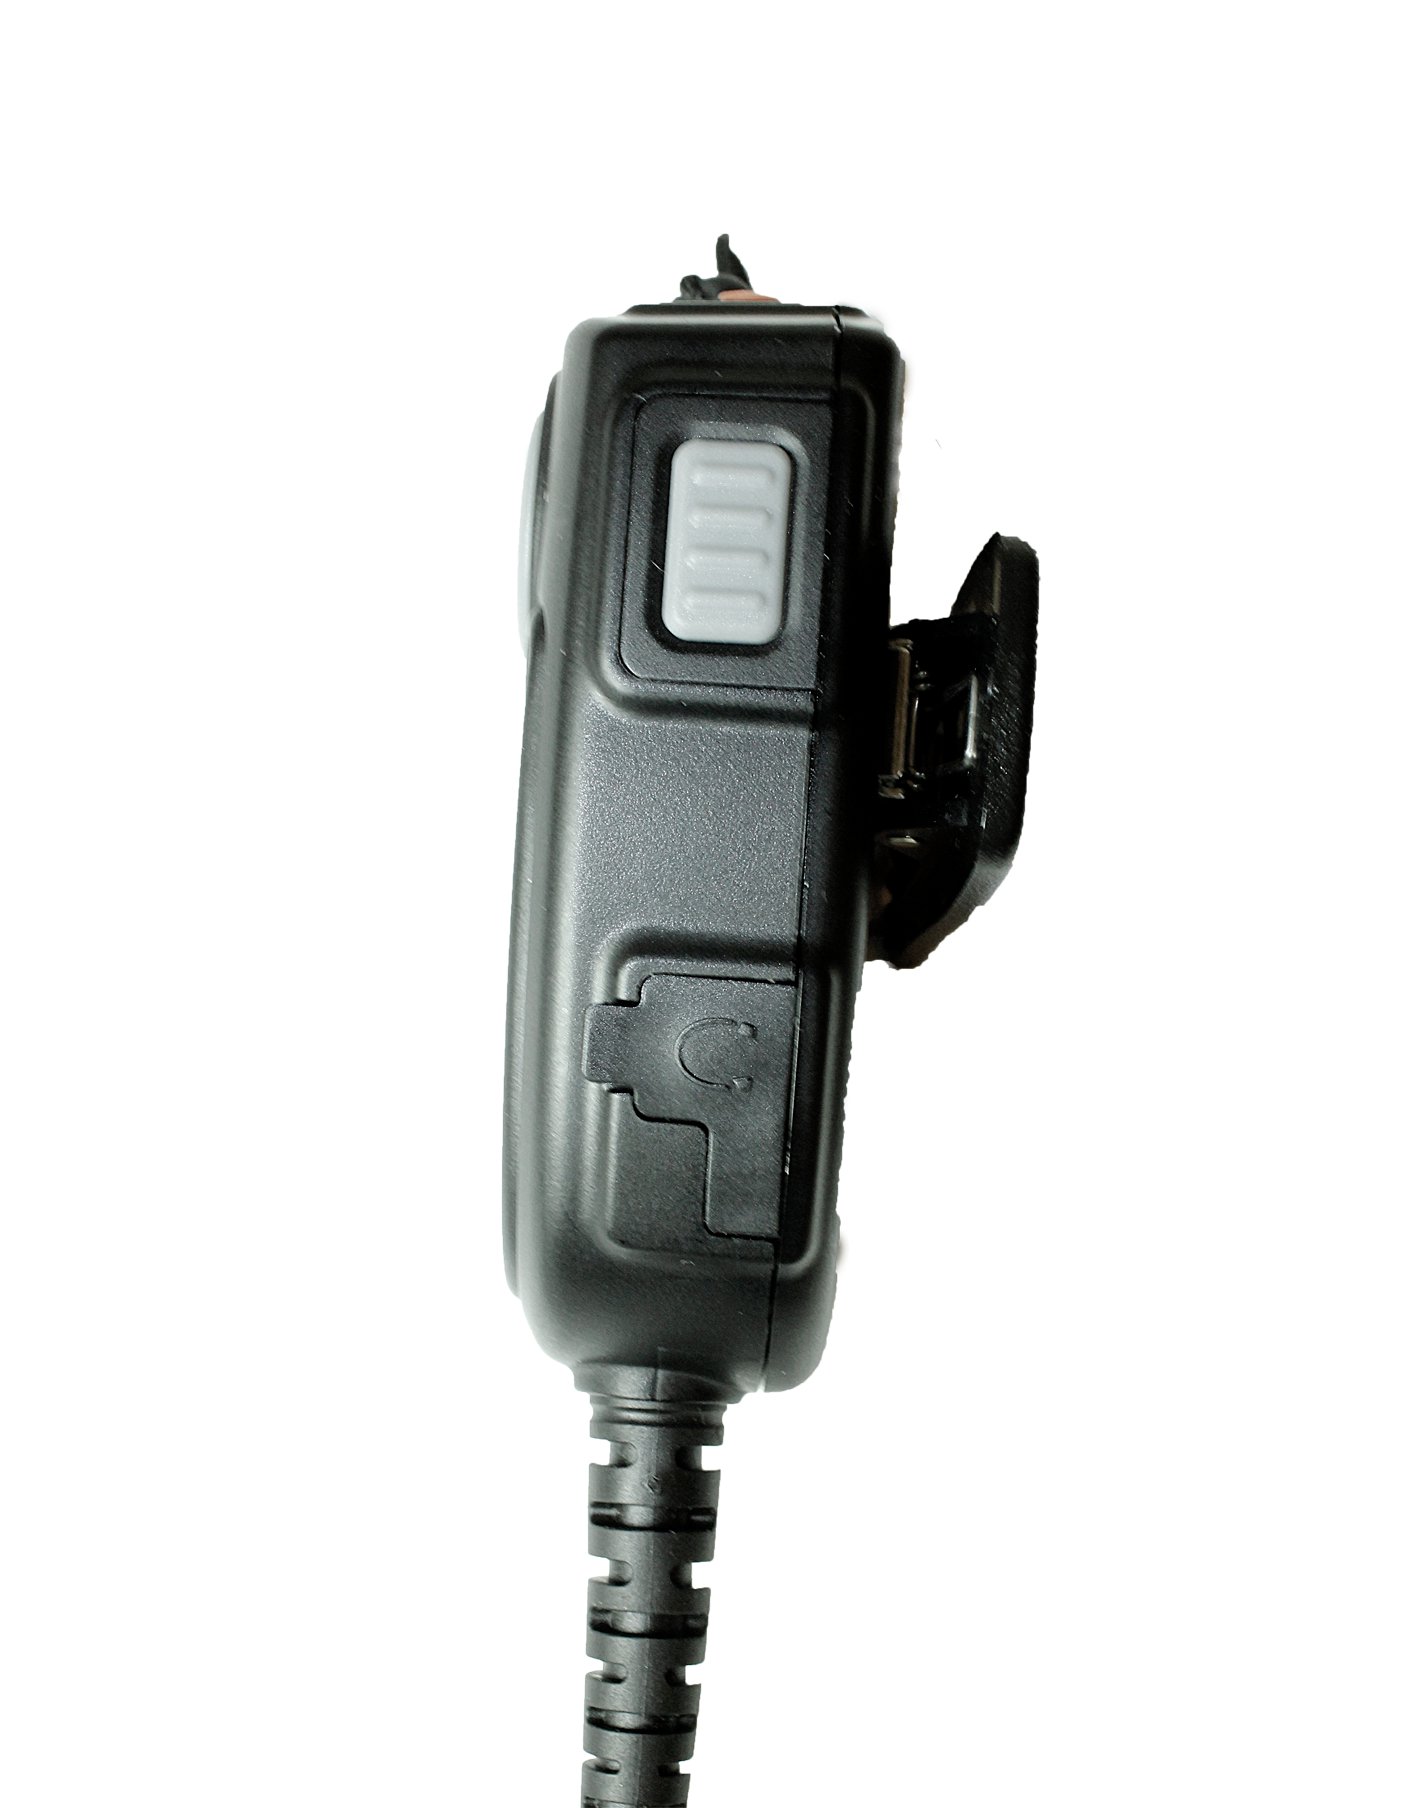 TITAN Lautsprechermikrofon MMW20 mit Nexus 03 und PTT-Modul passend für Motorola DP2400, DP2600